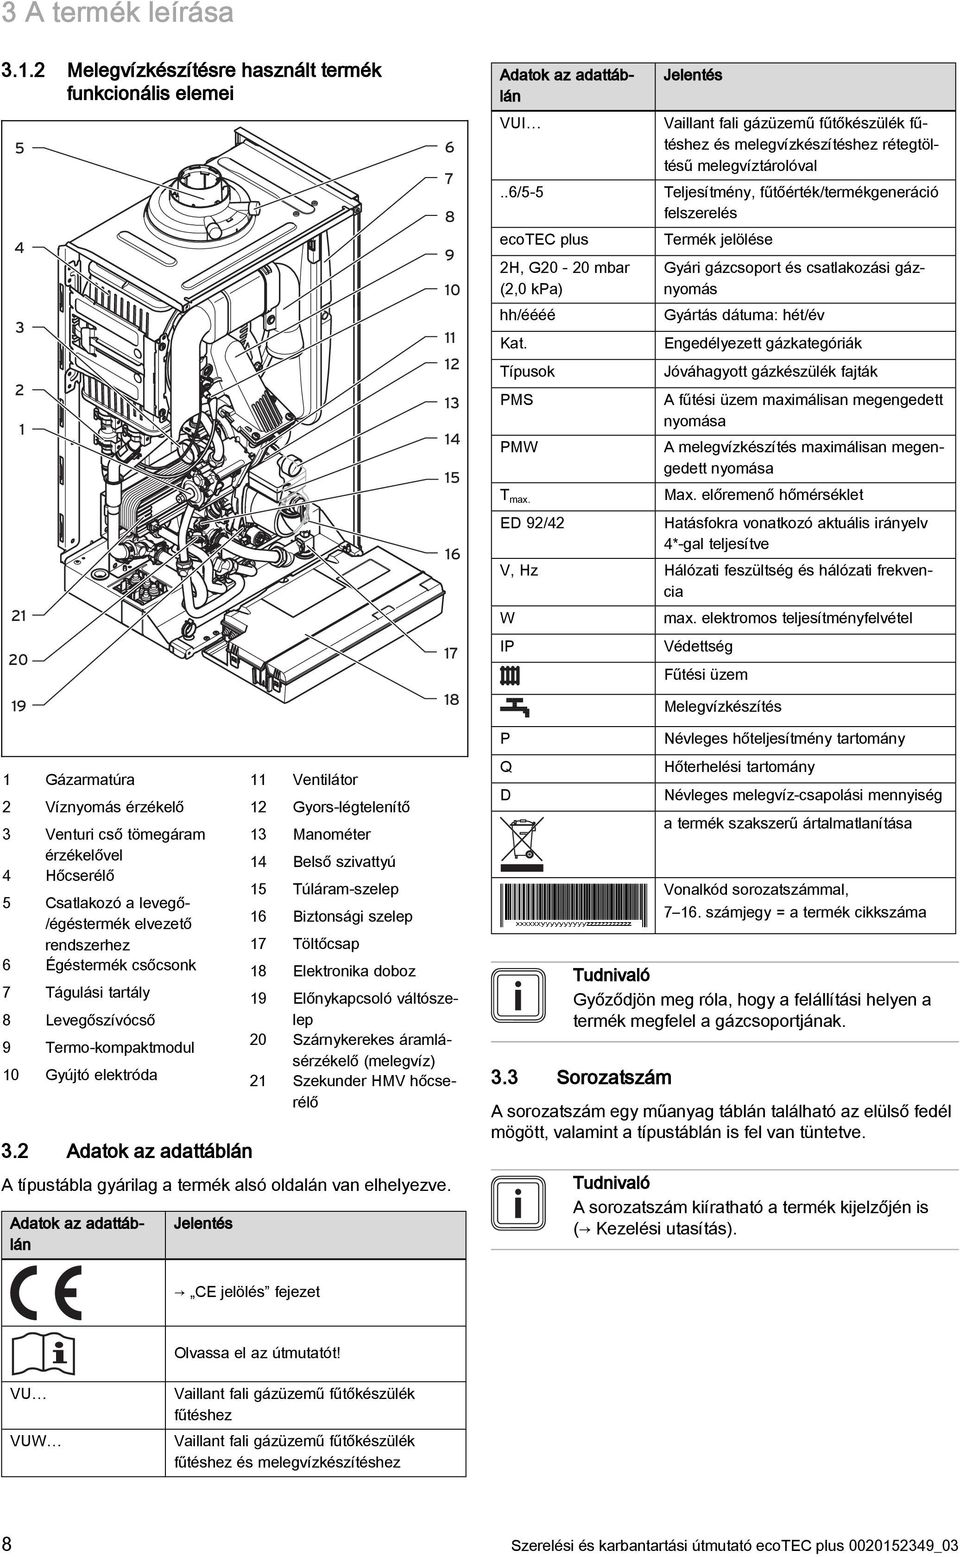 ecotec plus Szerelési és karbantartási útmutató Szerelési és karbantartási  útmutató Szakemberek számára VU, VUW, VUI..6/5 5 Kiadó/gyártó Vaillant GmbH  - PDF Free Download